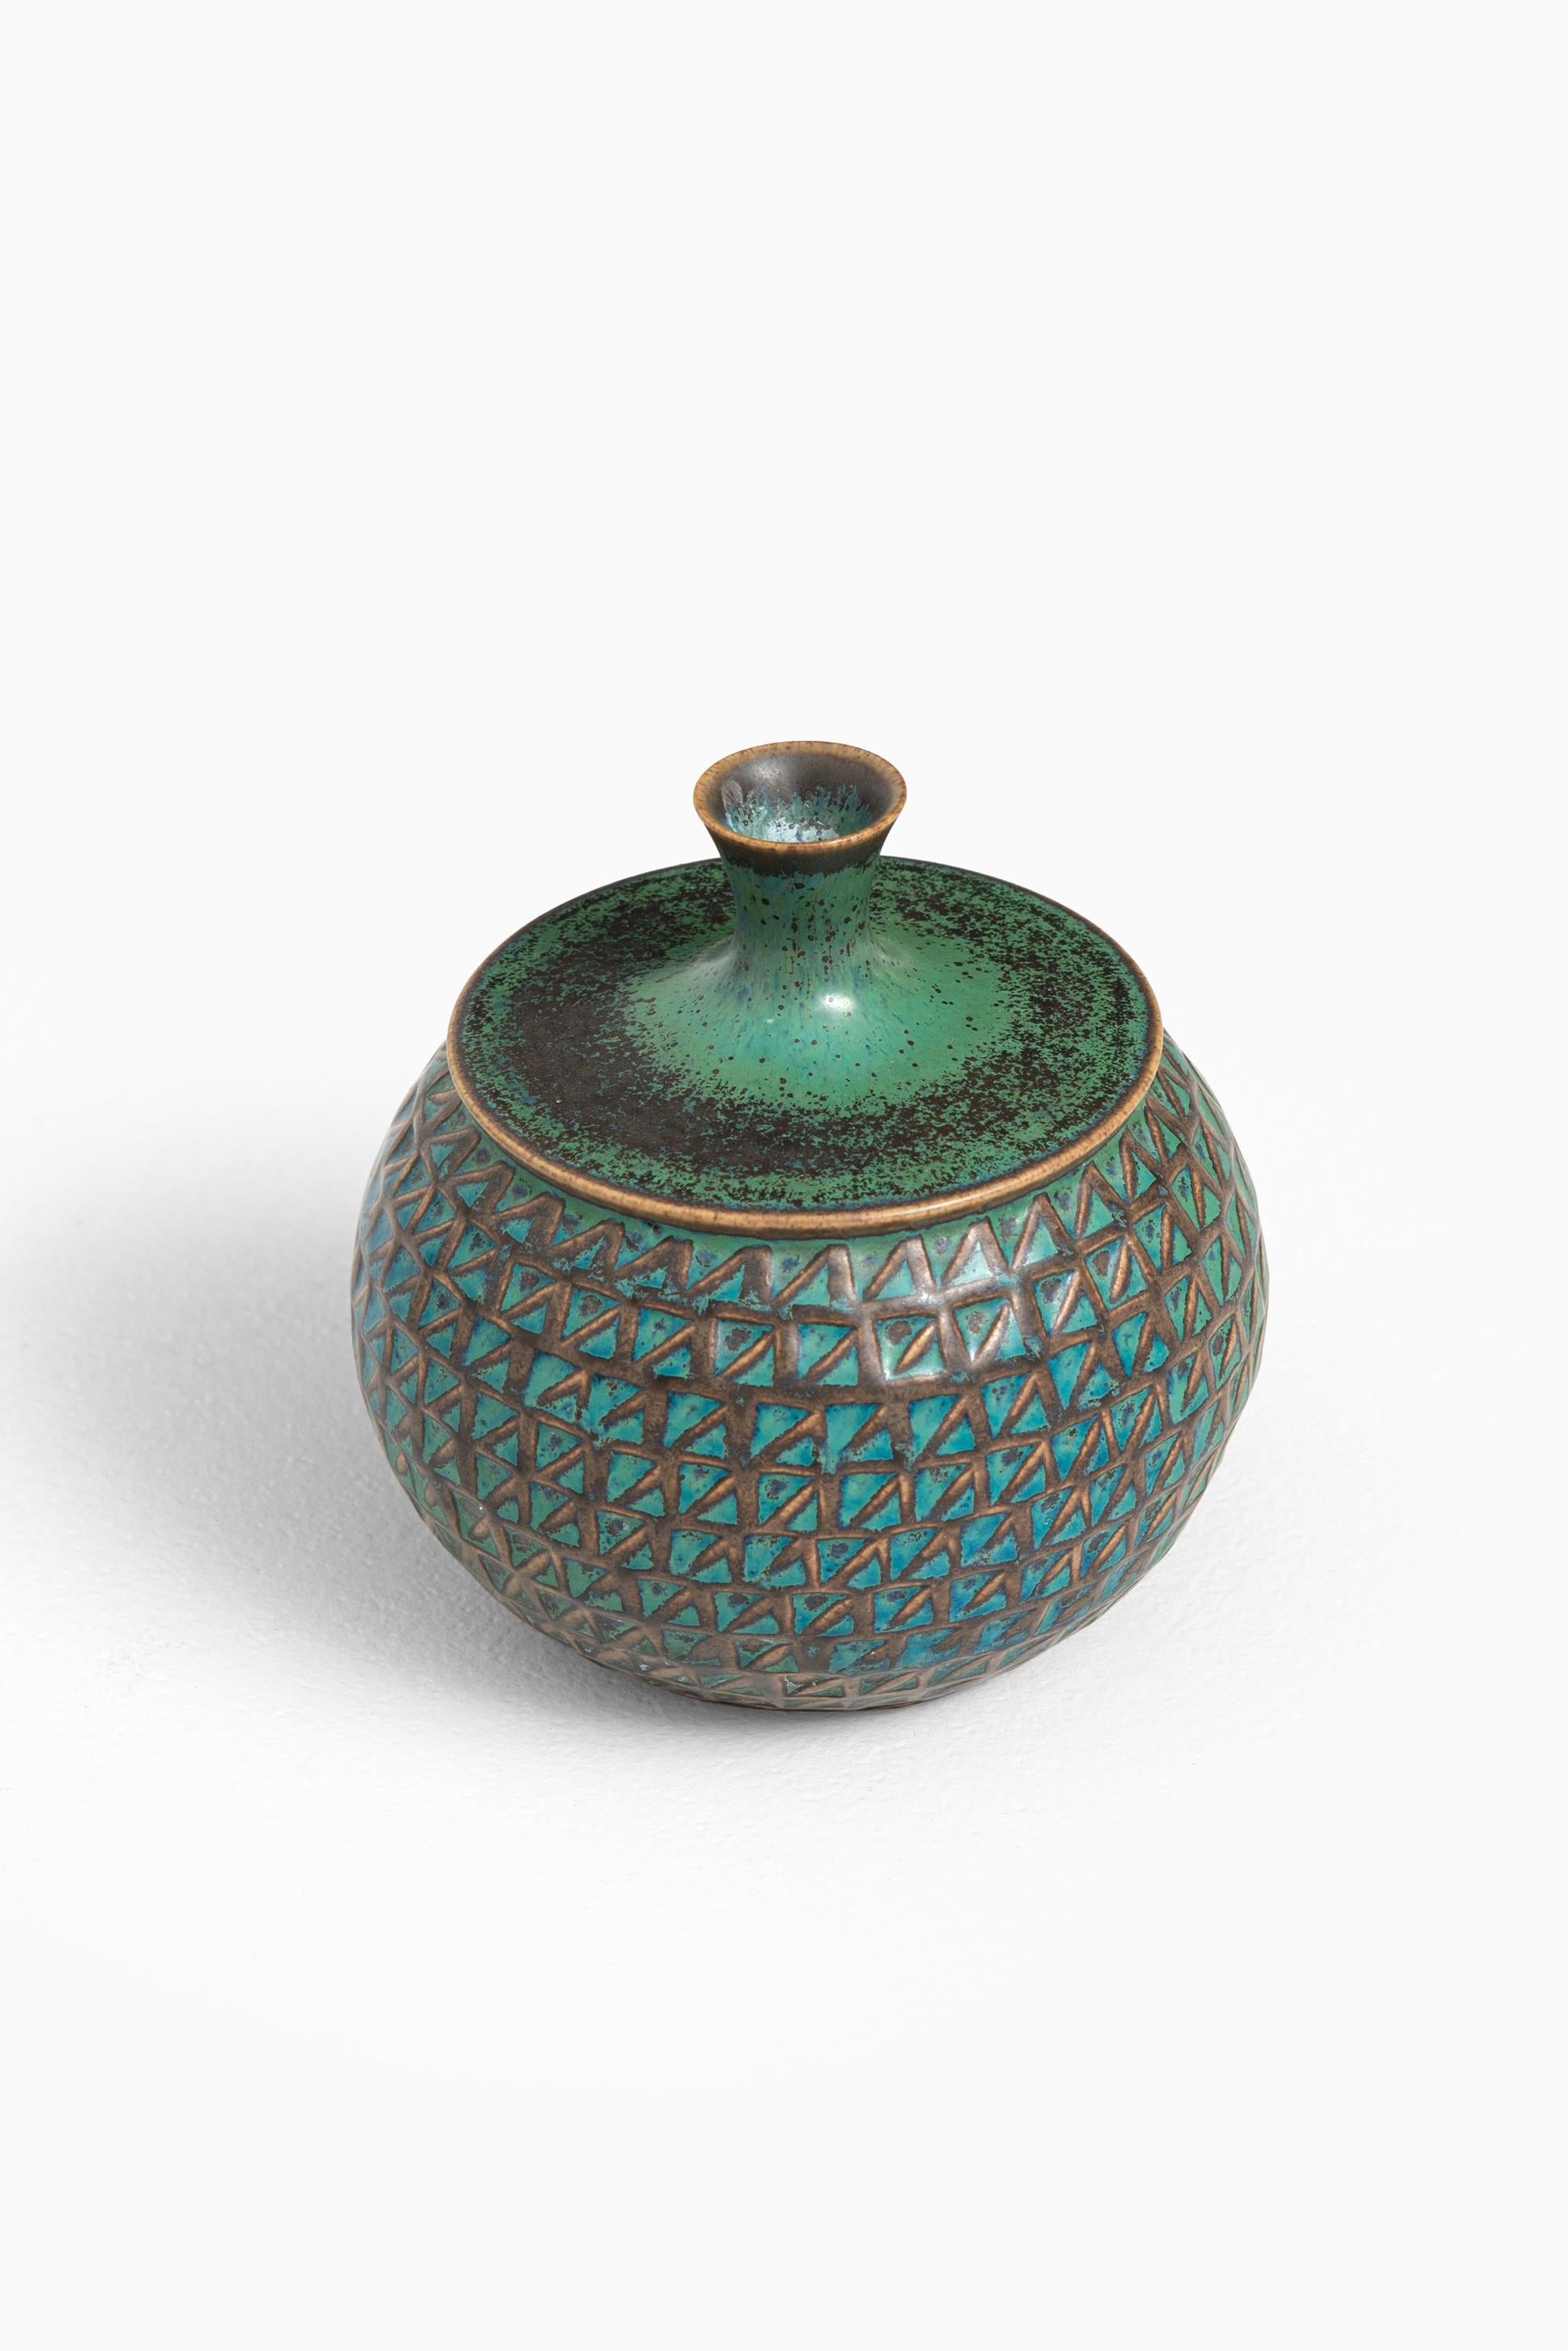 Ceramic vase designed by Stig Lindberg. Produced by Gustavsberg in Sweden.